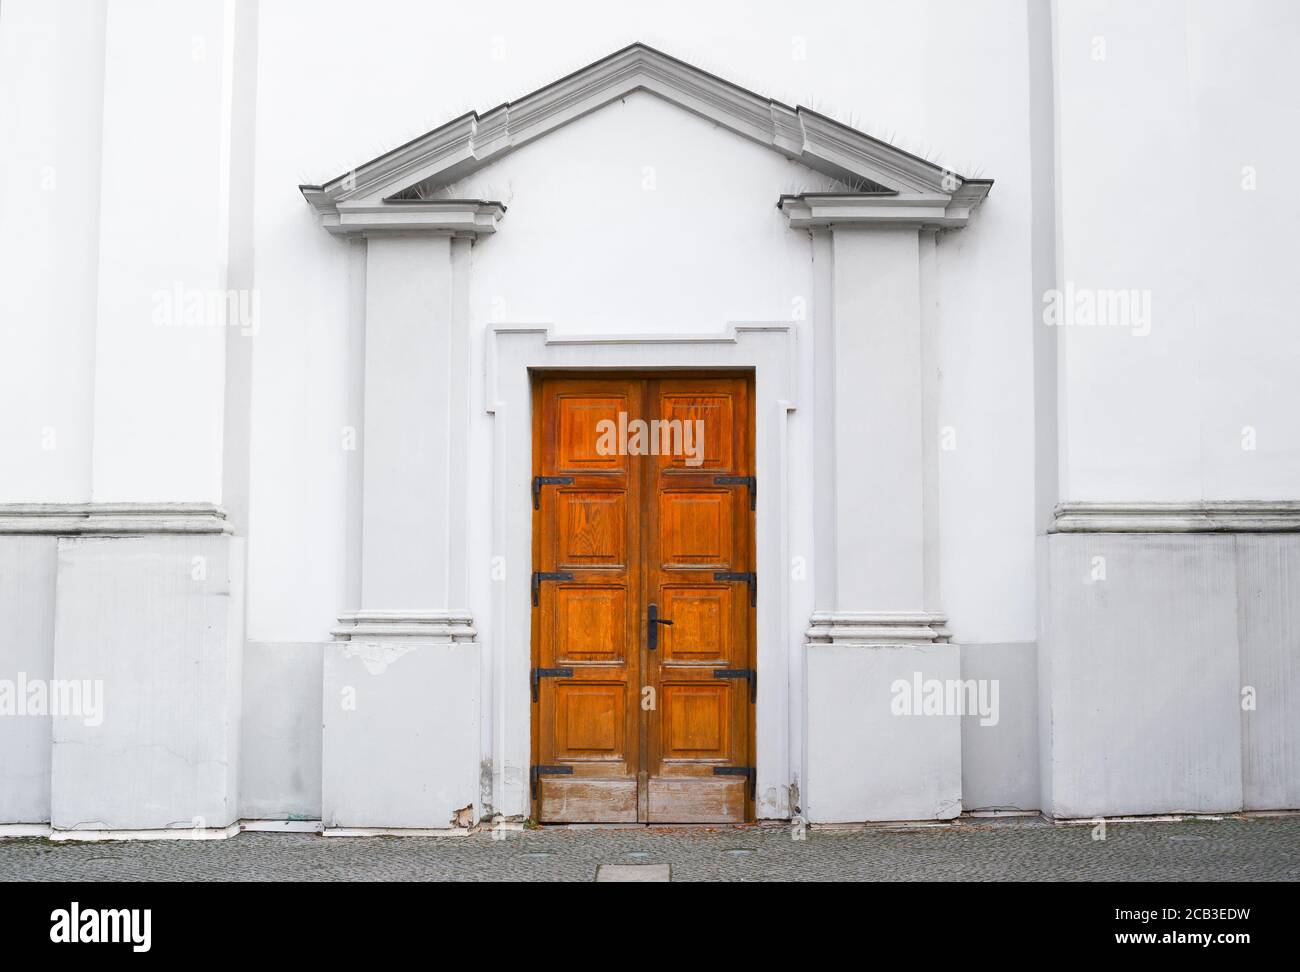 Puerta de madera y entrada al antiguo edificio histórico. La arquitectura blanca está hecha en estilo arquitectónico clasicista. Composición central simétrica Foto de stock